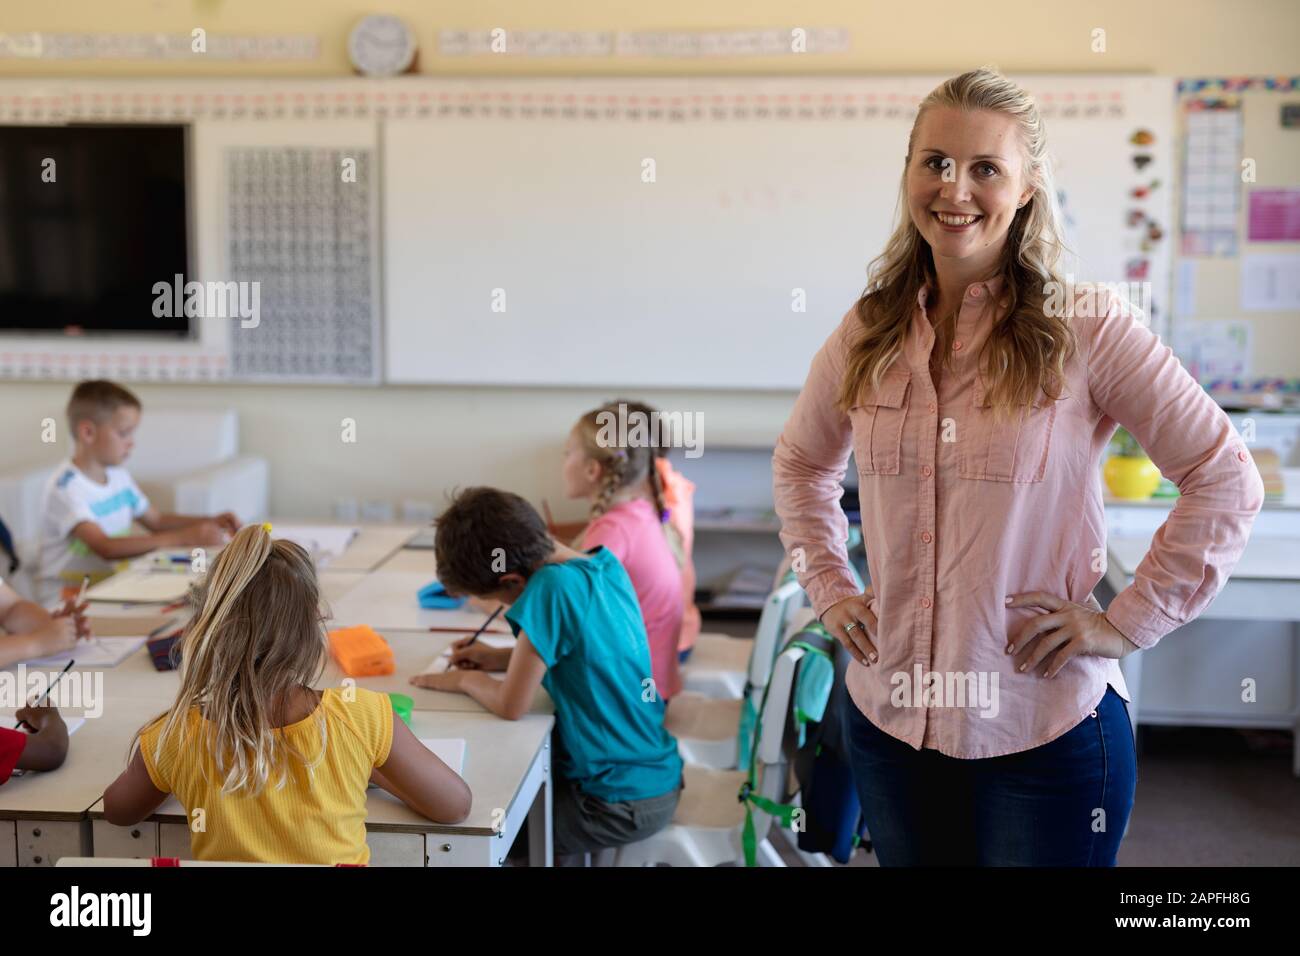 Professeur de femme avec de longs cheveux blonds debout dans une salle de classe Banque D'Images